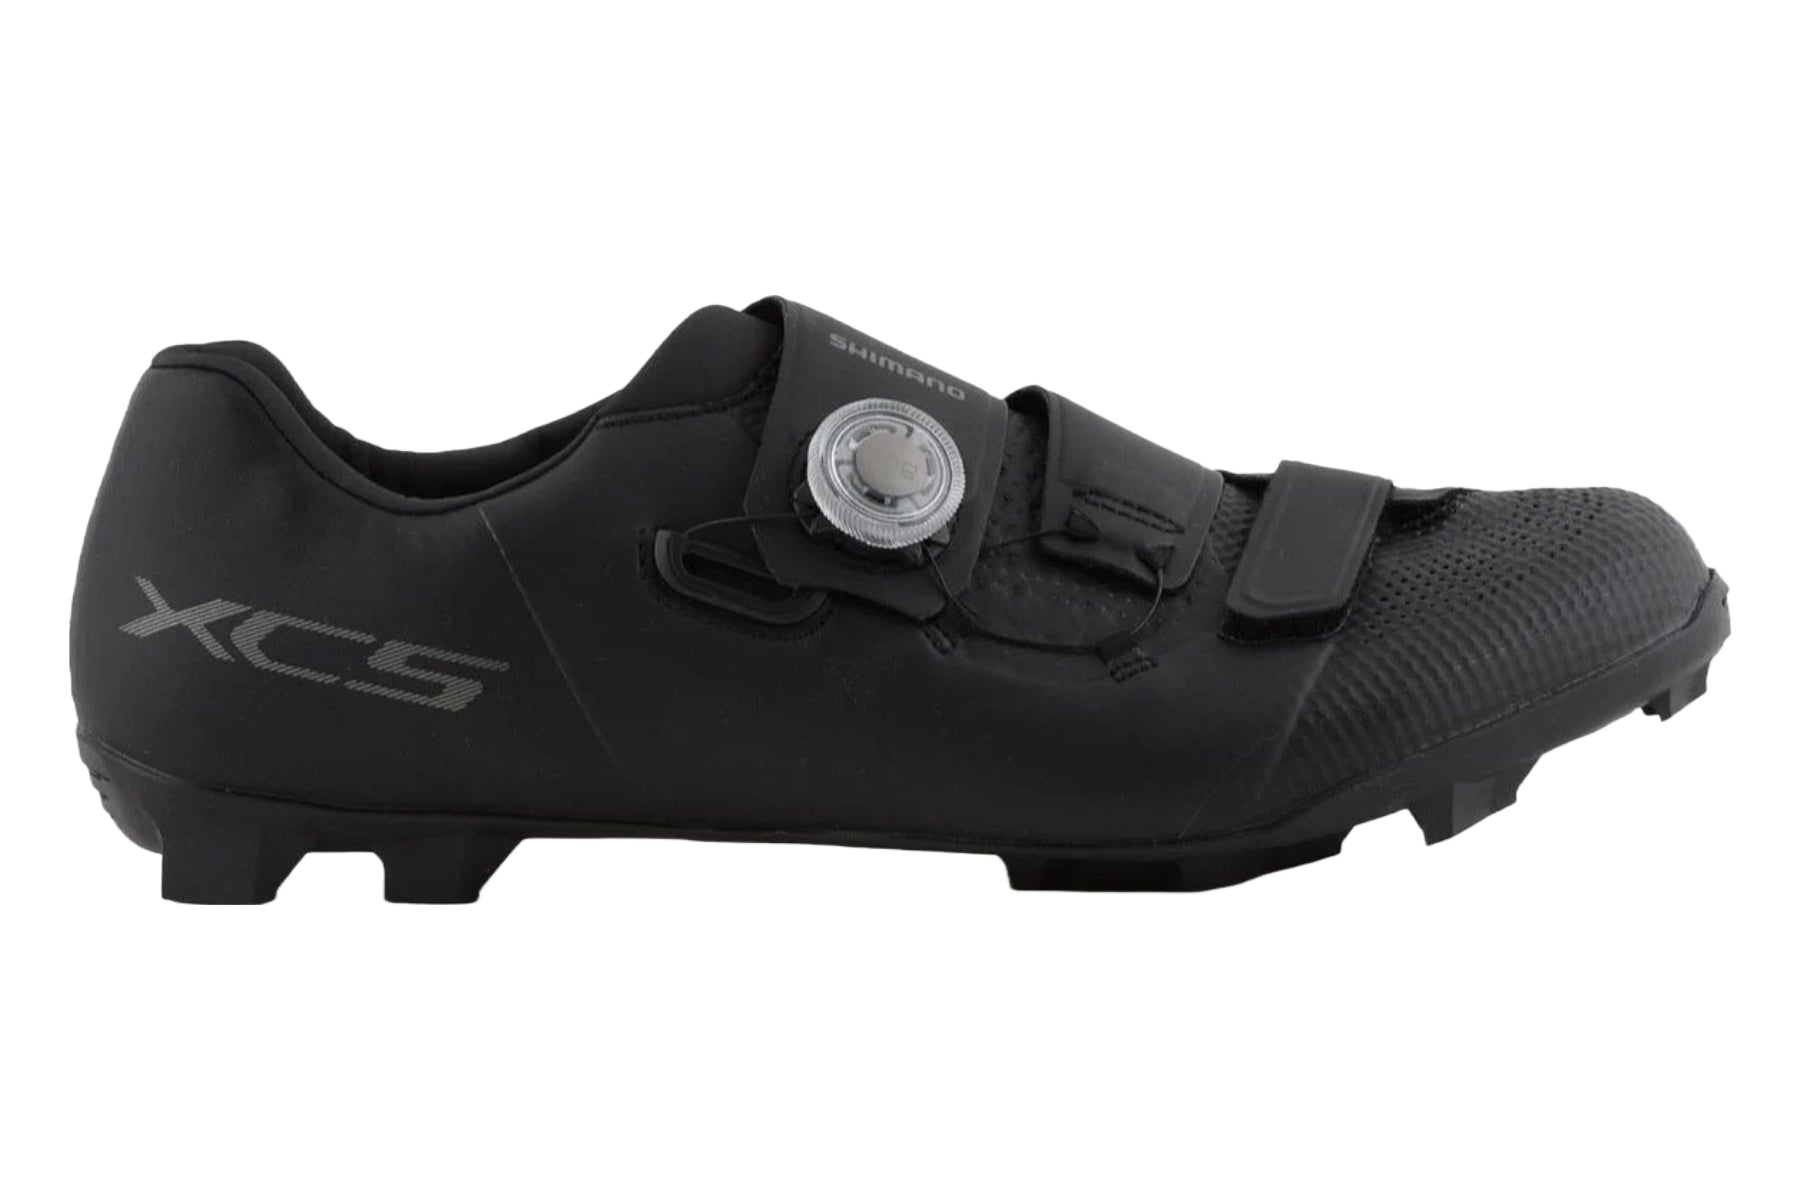 Photos - Cycling Shoes Shimano XC5 Mountain Shoes - Black - 47 ESHXC502MCL01S47000 